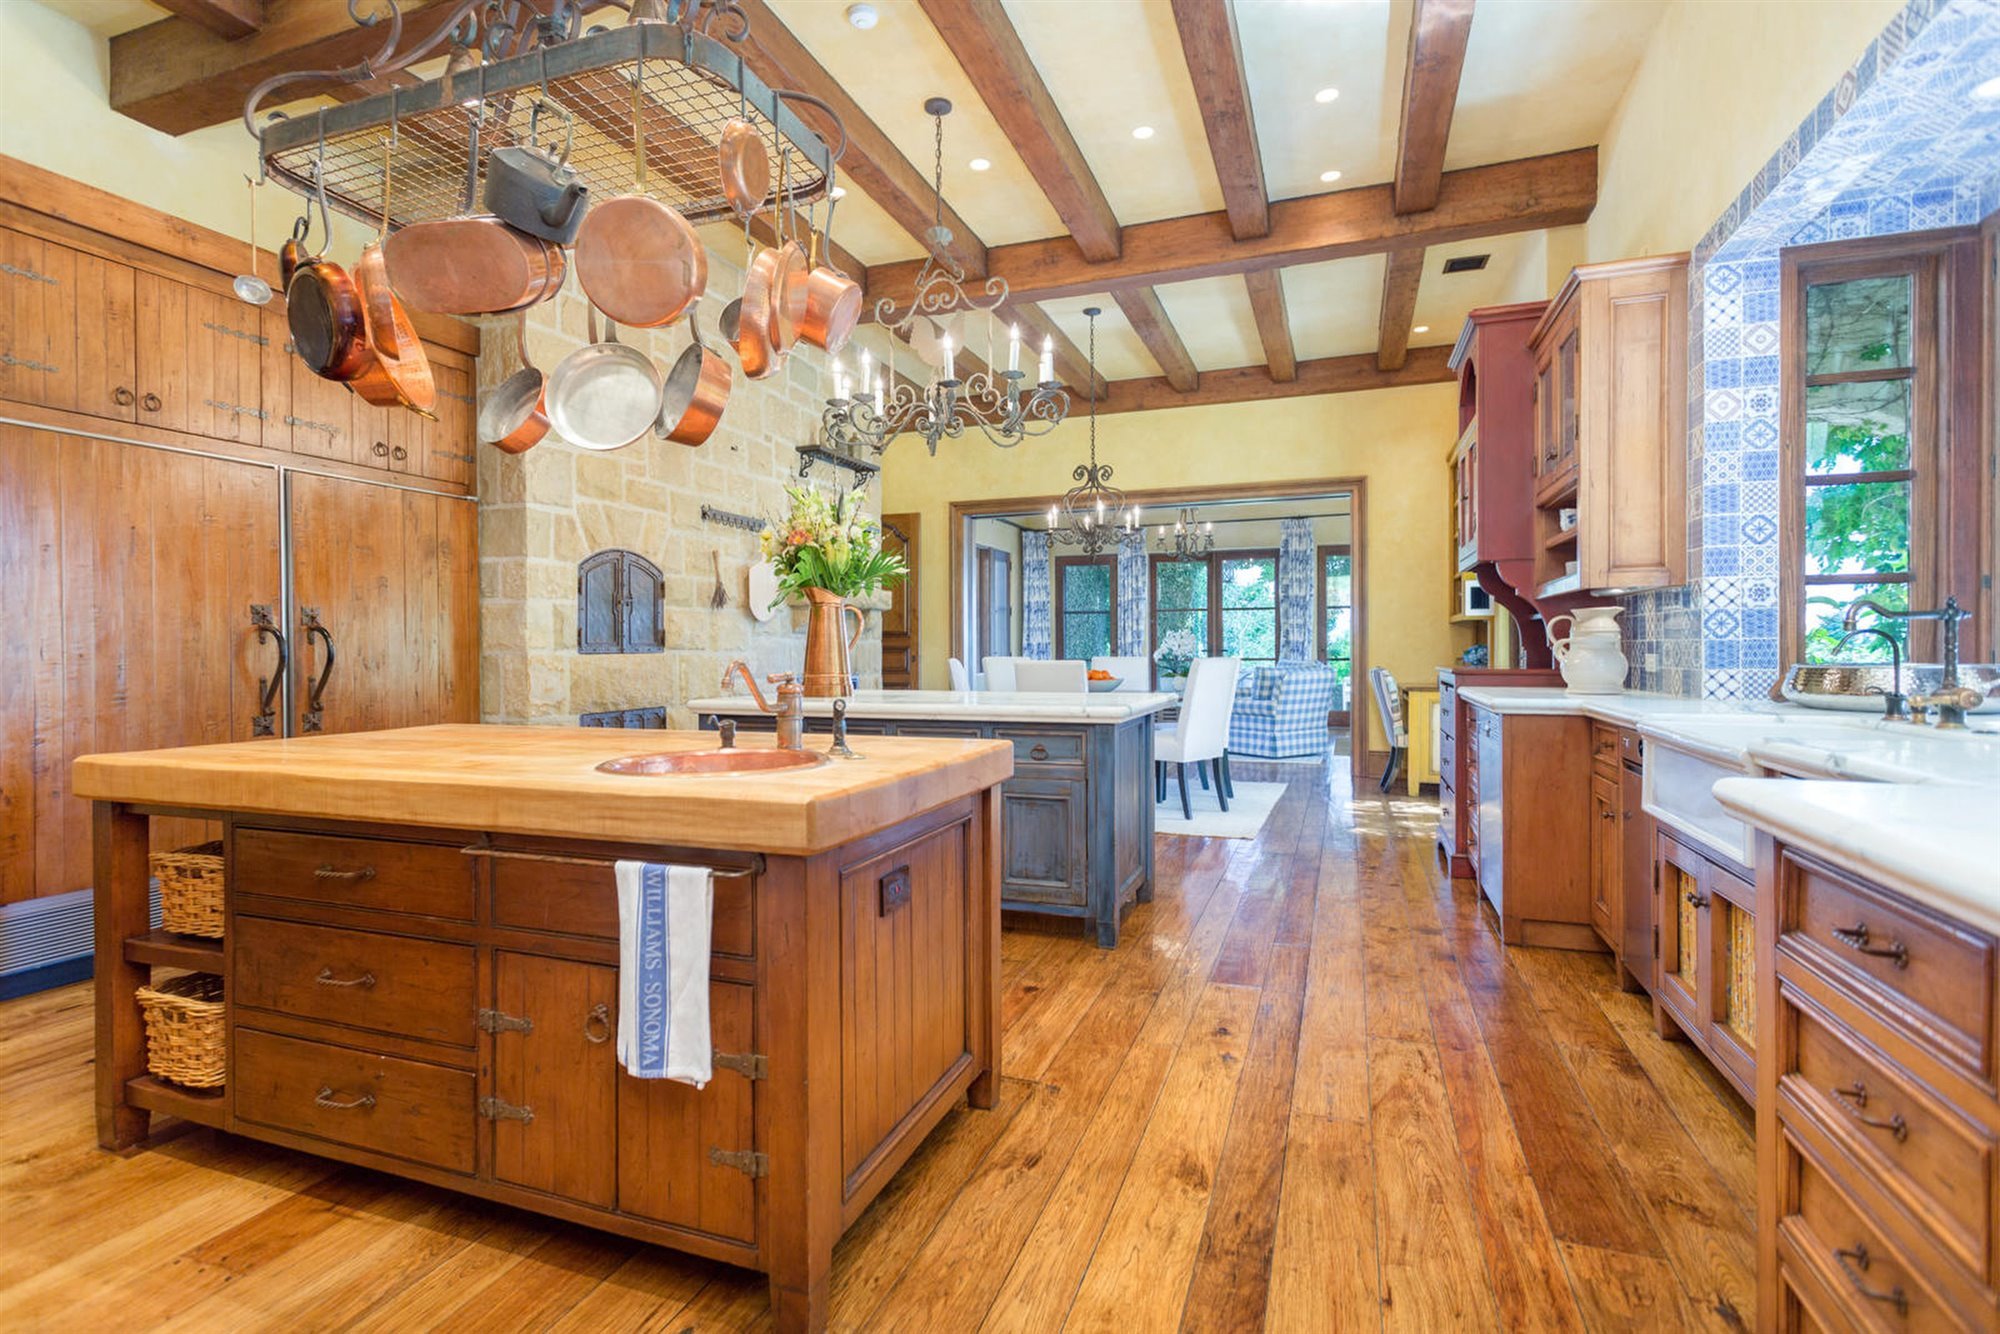 Cocina de madera  de la casa en Montecito del principe Harry y Meghan Markle